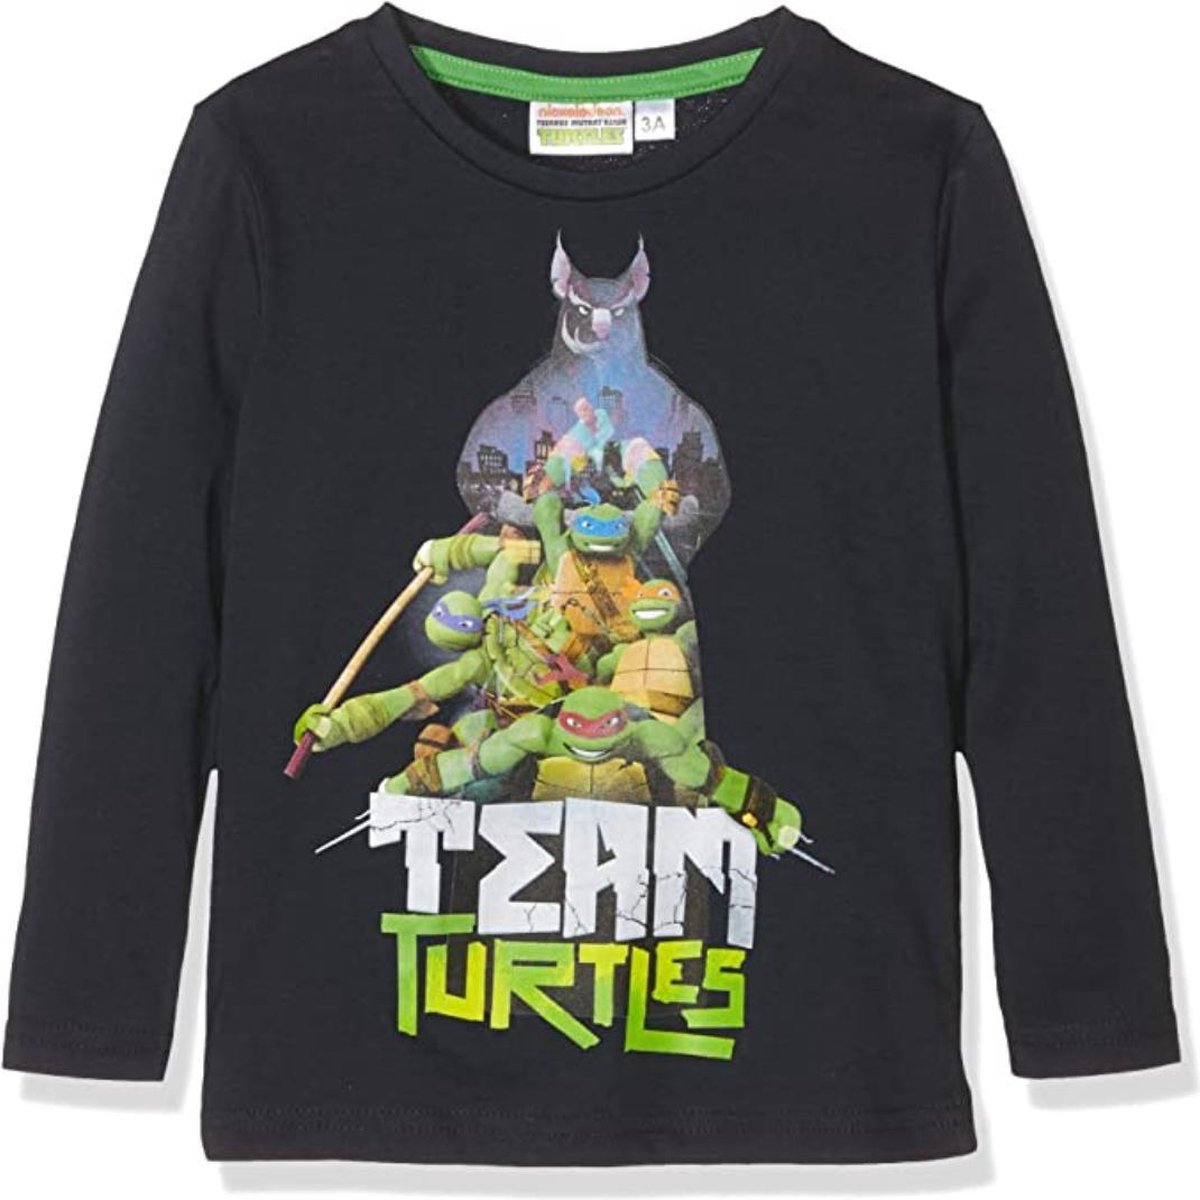 Teenage Mutant Ninja Turtles - Longsleeve - Model 